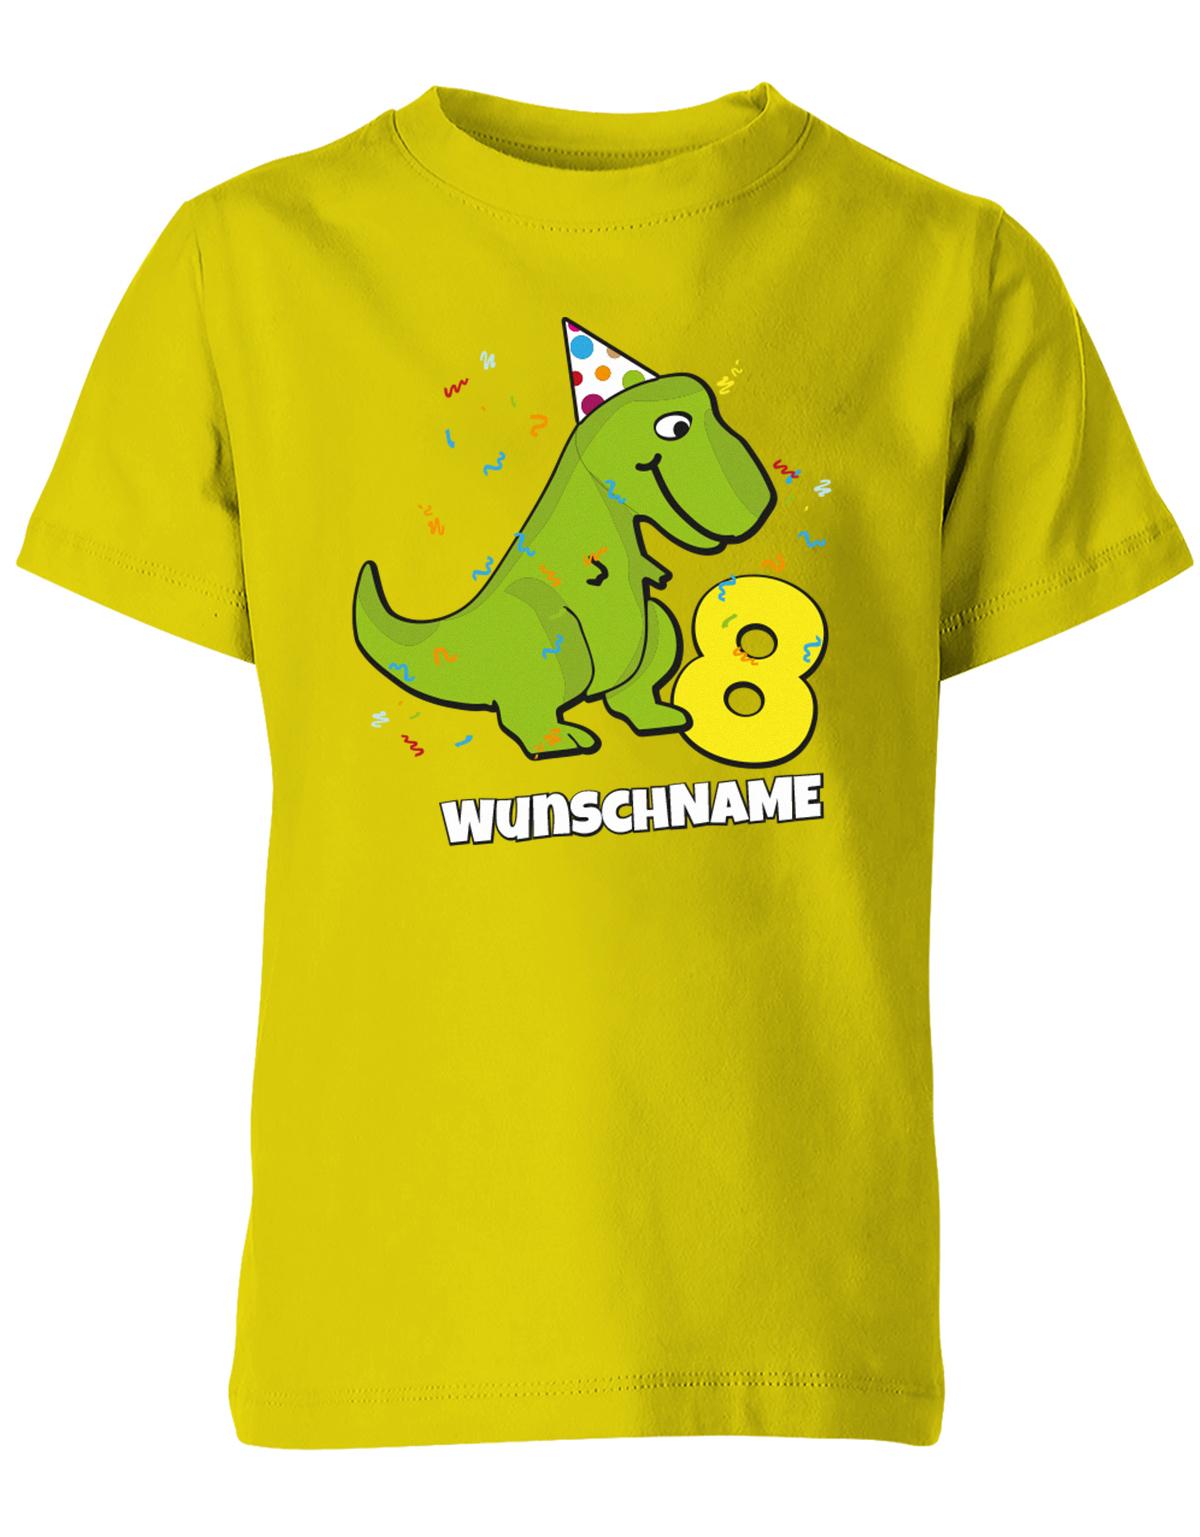 ich-bin-8-Dinosaurier-t-rex-wunschname-geburtstag-kinder-shirt-gelb